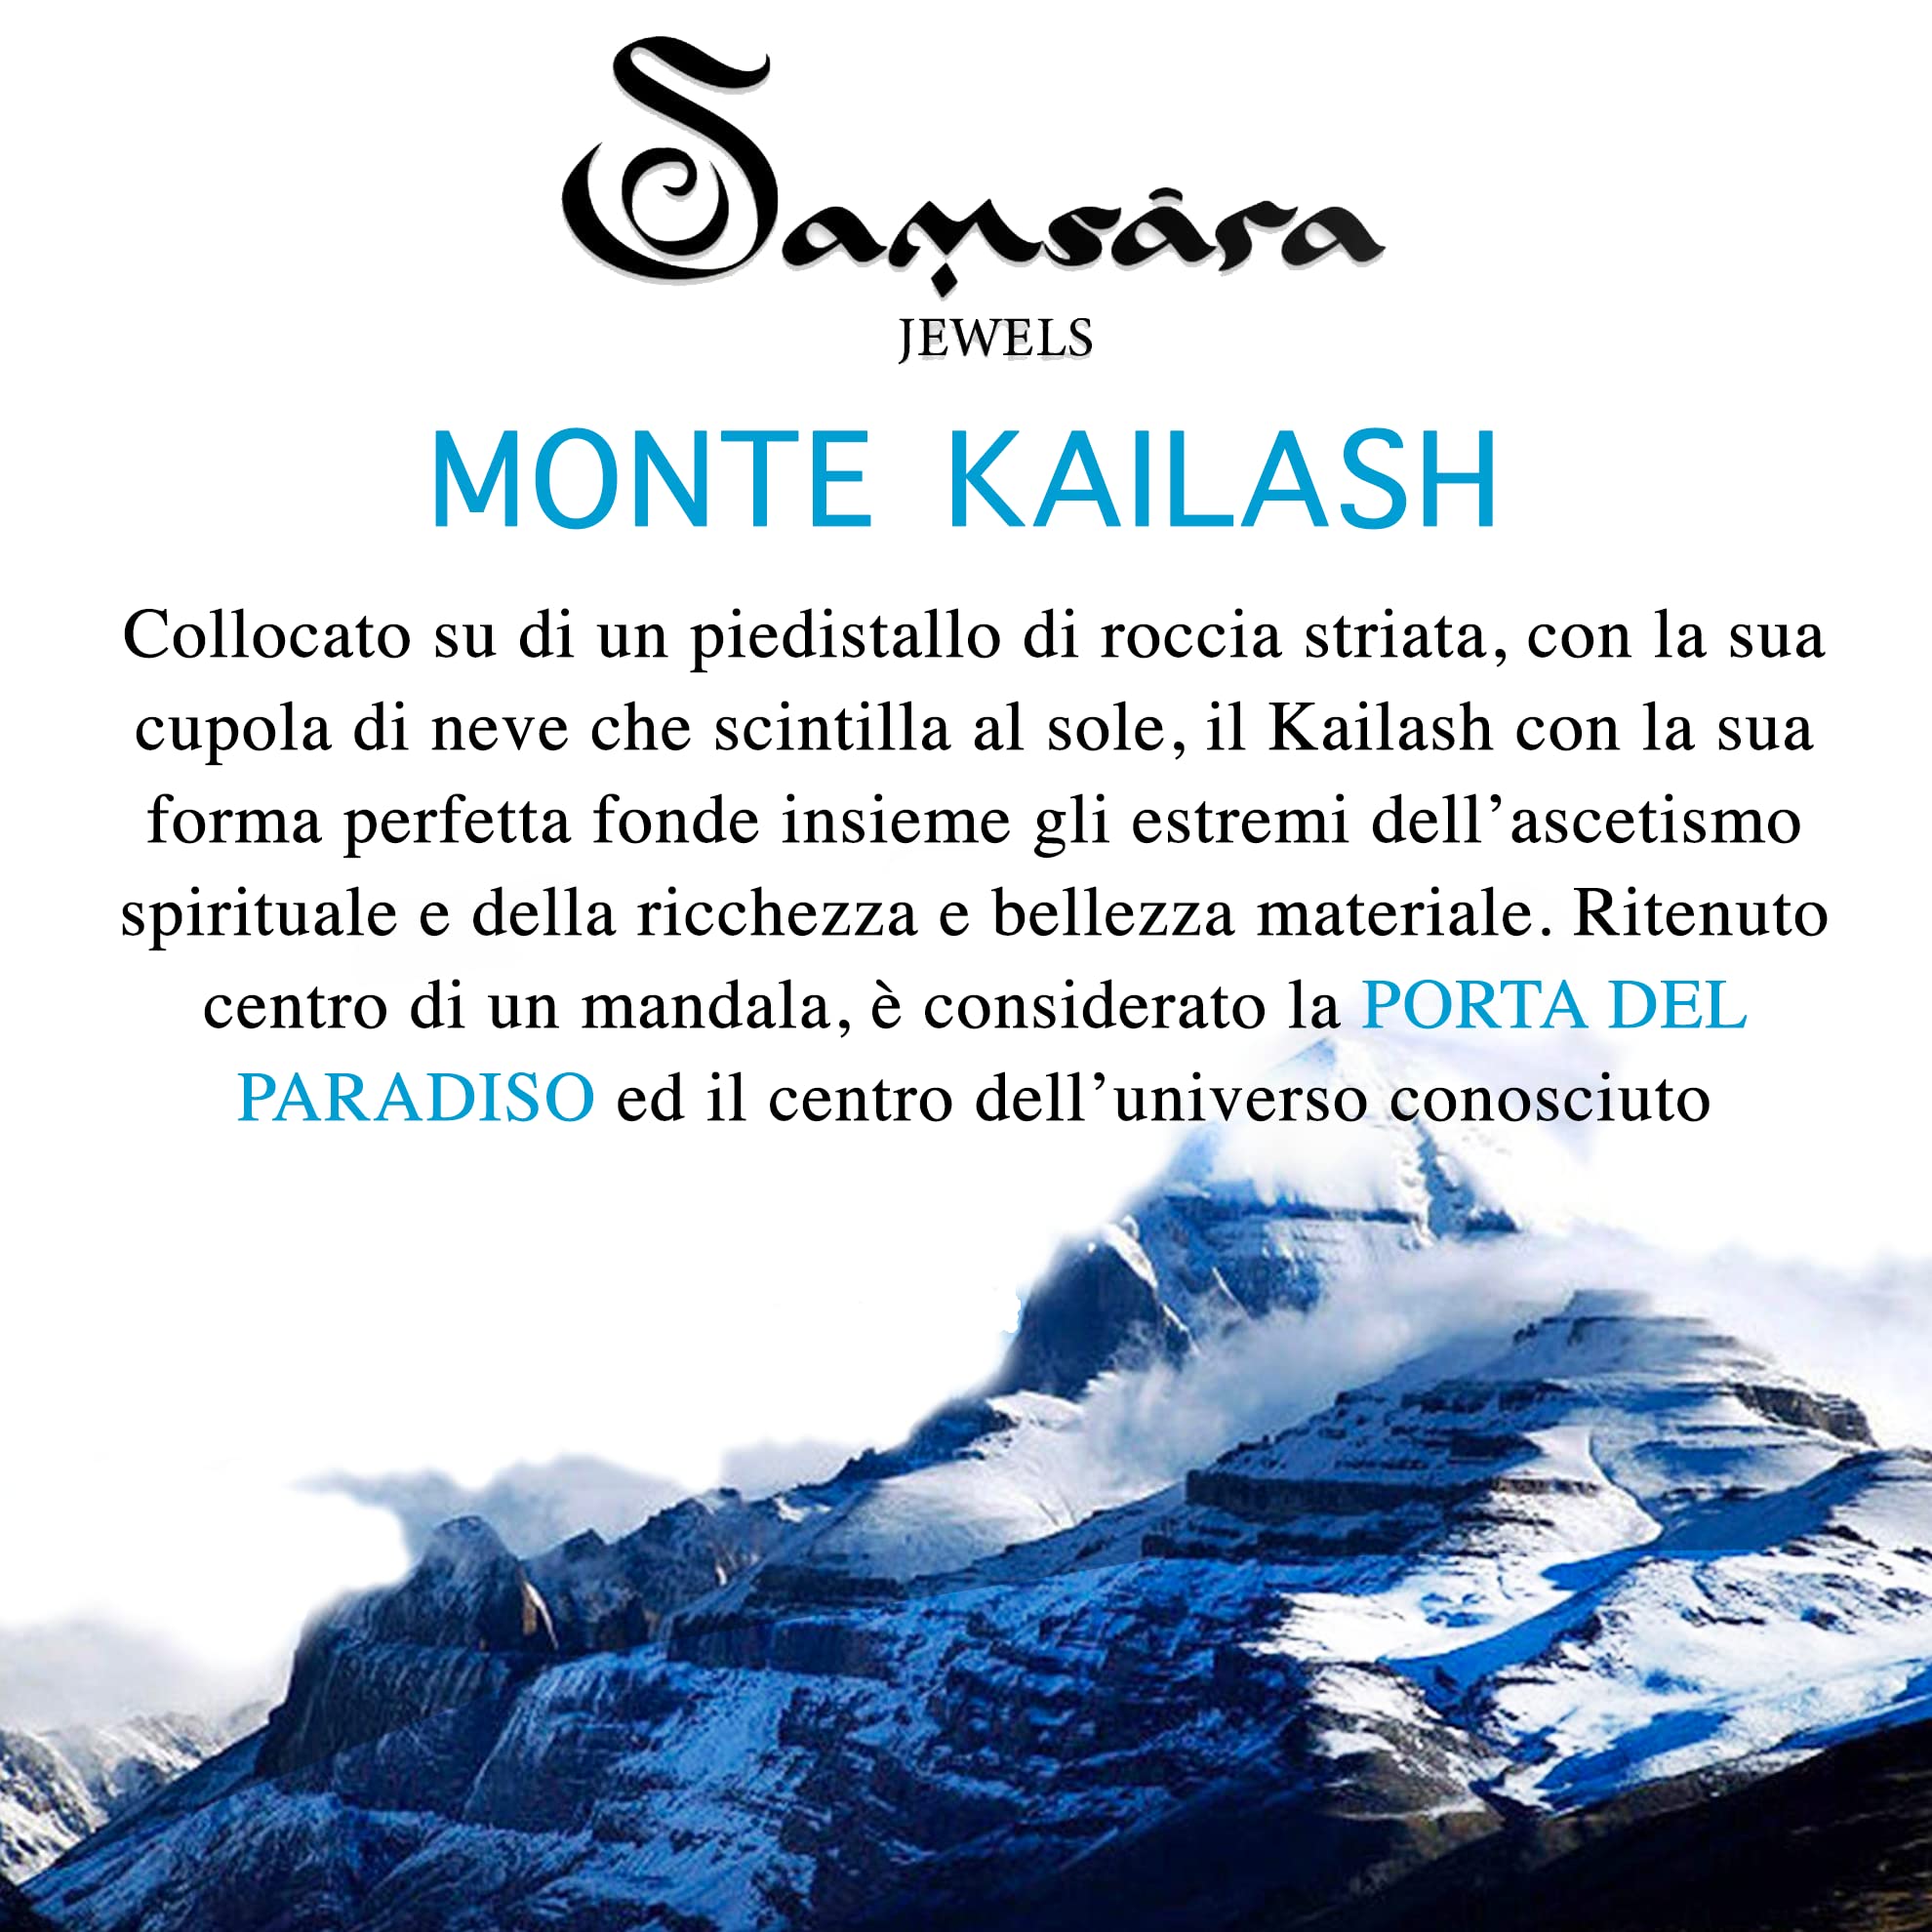 Samsara Bracciale Kailash Tibetano Buddista - Bracciale Spirituale Con Agata Fossile - Filo in cotone cerato Bianco